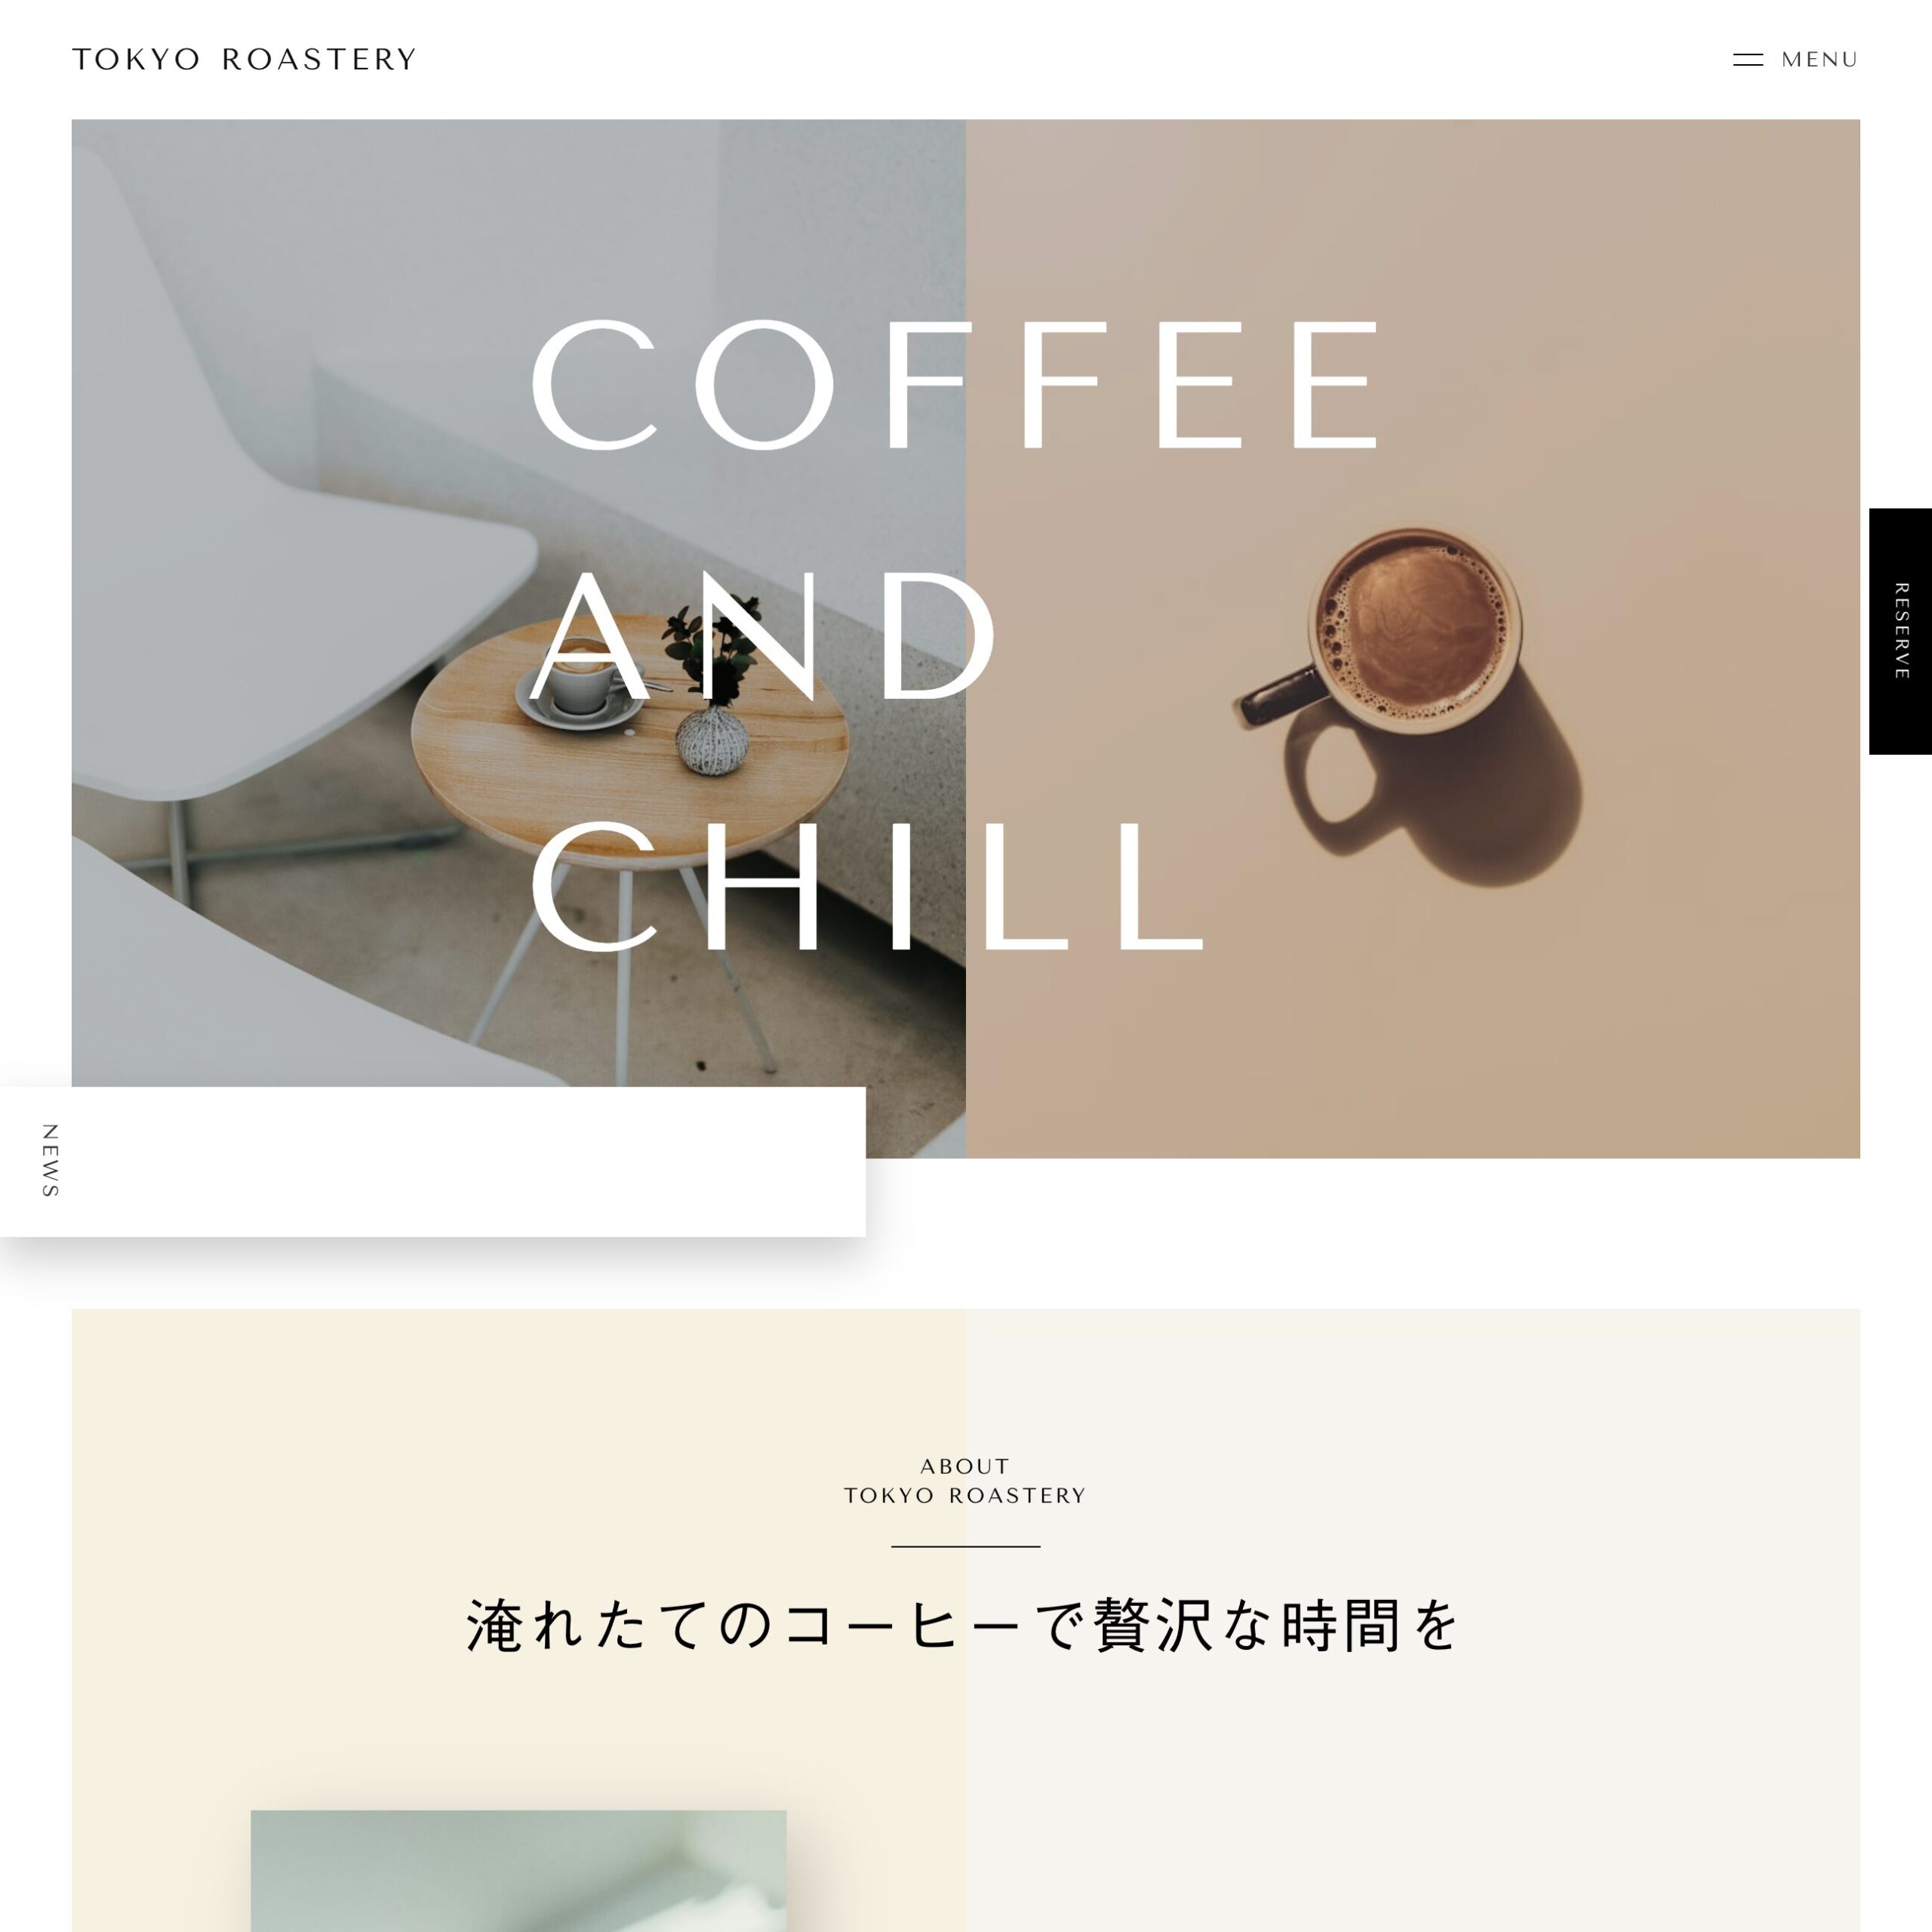 カフェのホームページ